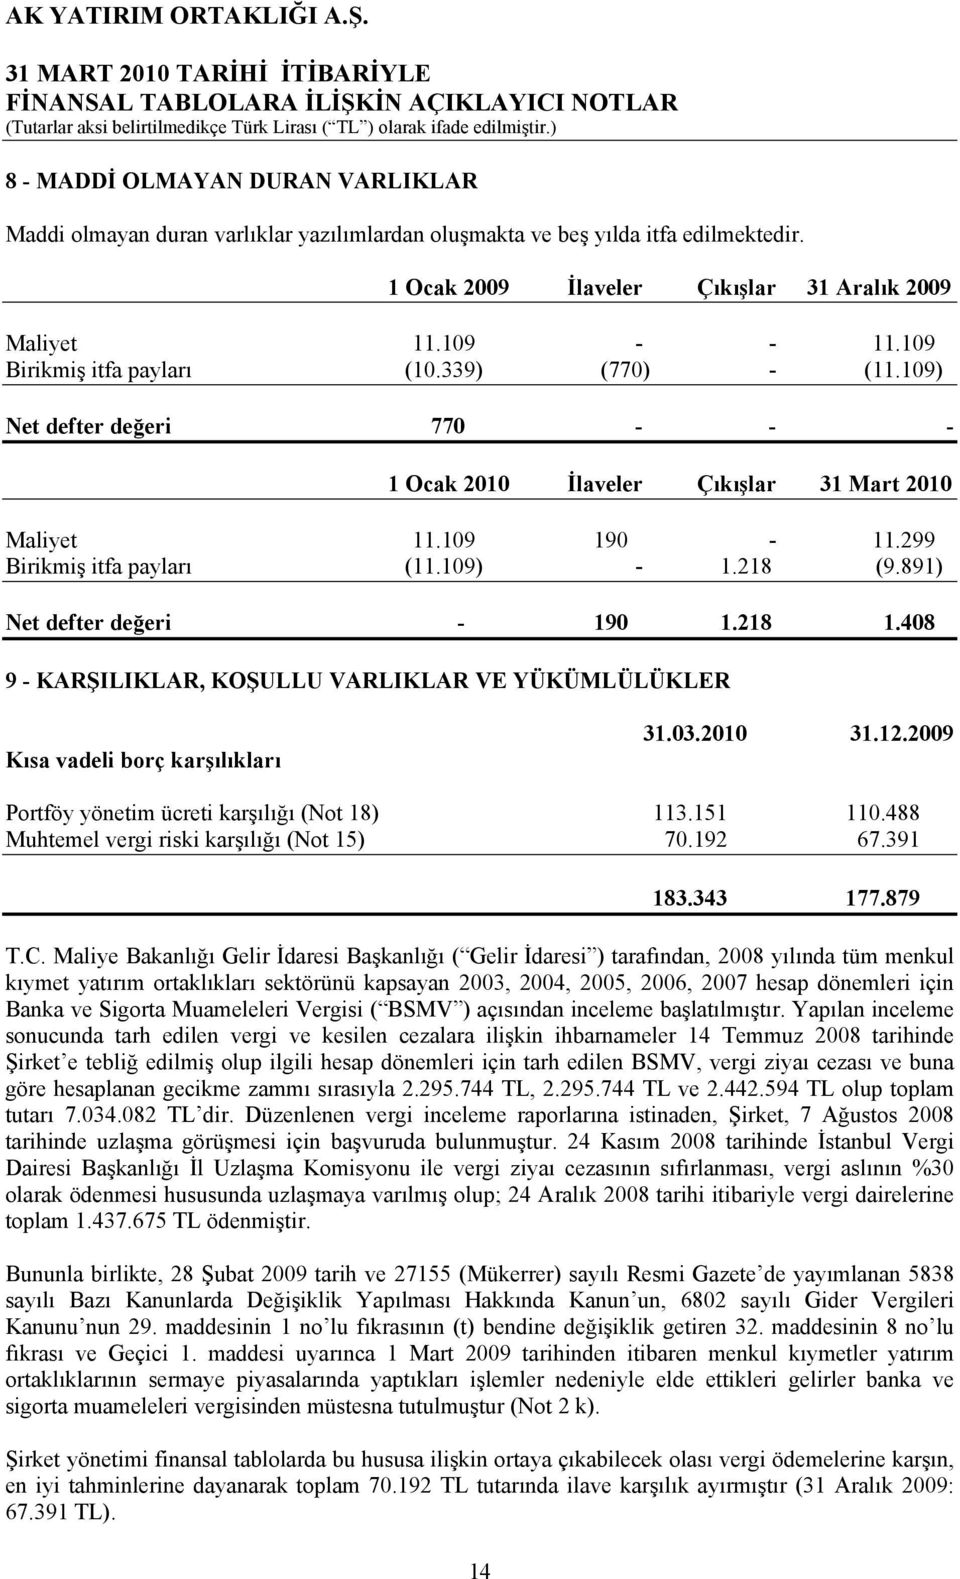 891) Net defter değeri - 190 1.218 1.408 9 - KARŞILIKLAR, KOŞULLU VARLIKLAR VE YÜKÜMLÜLÜKLER Kısa vadeli borç karşılıkları Portföy yönetim ücreti karşılığı (Not 18) 113.151 110.